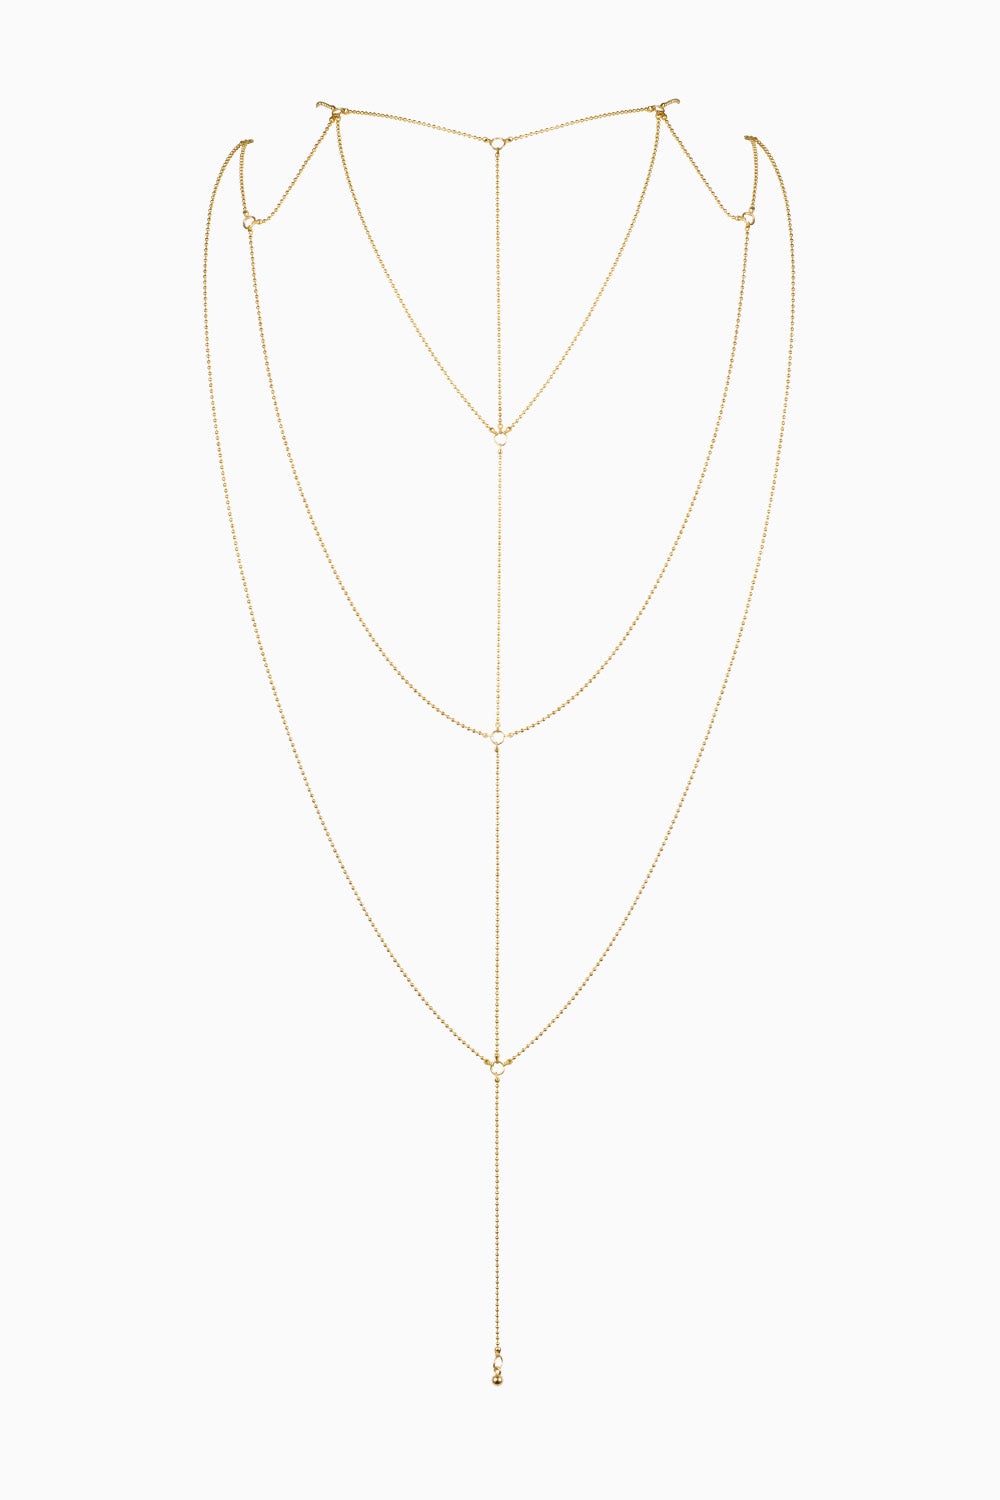 Bijoux Indiscrets Magnifique Back & Cleavage Chain Gold